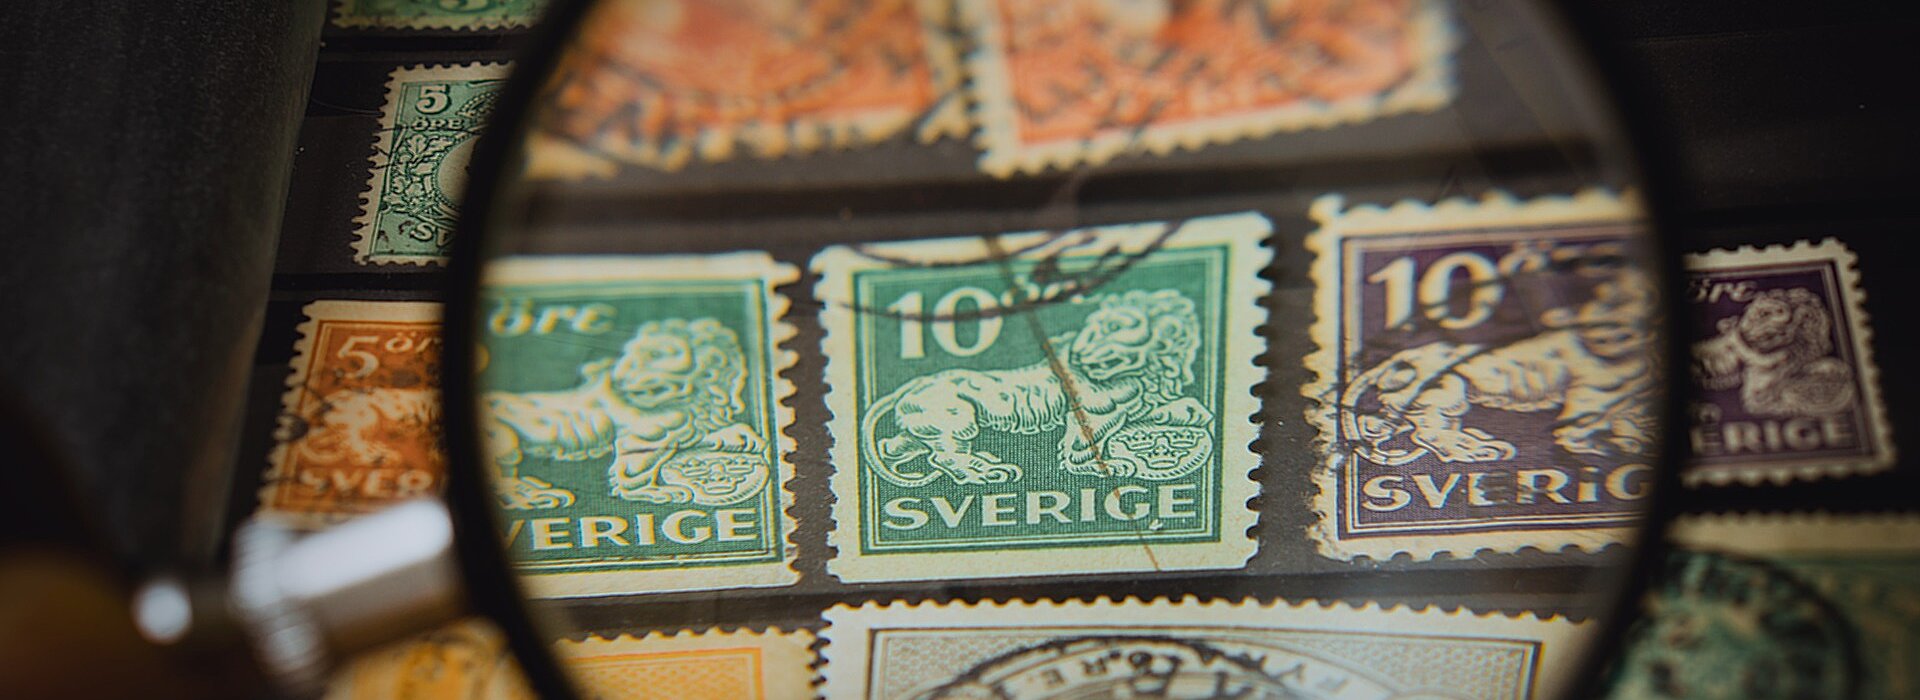 Na foto aparece uma lupa em cima de selos postais